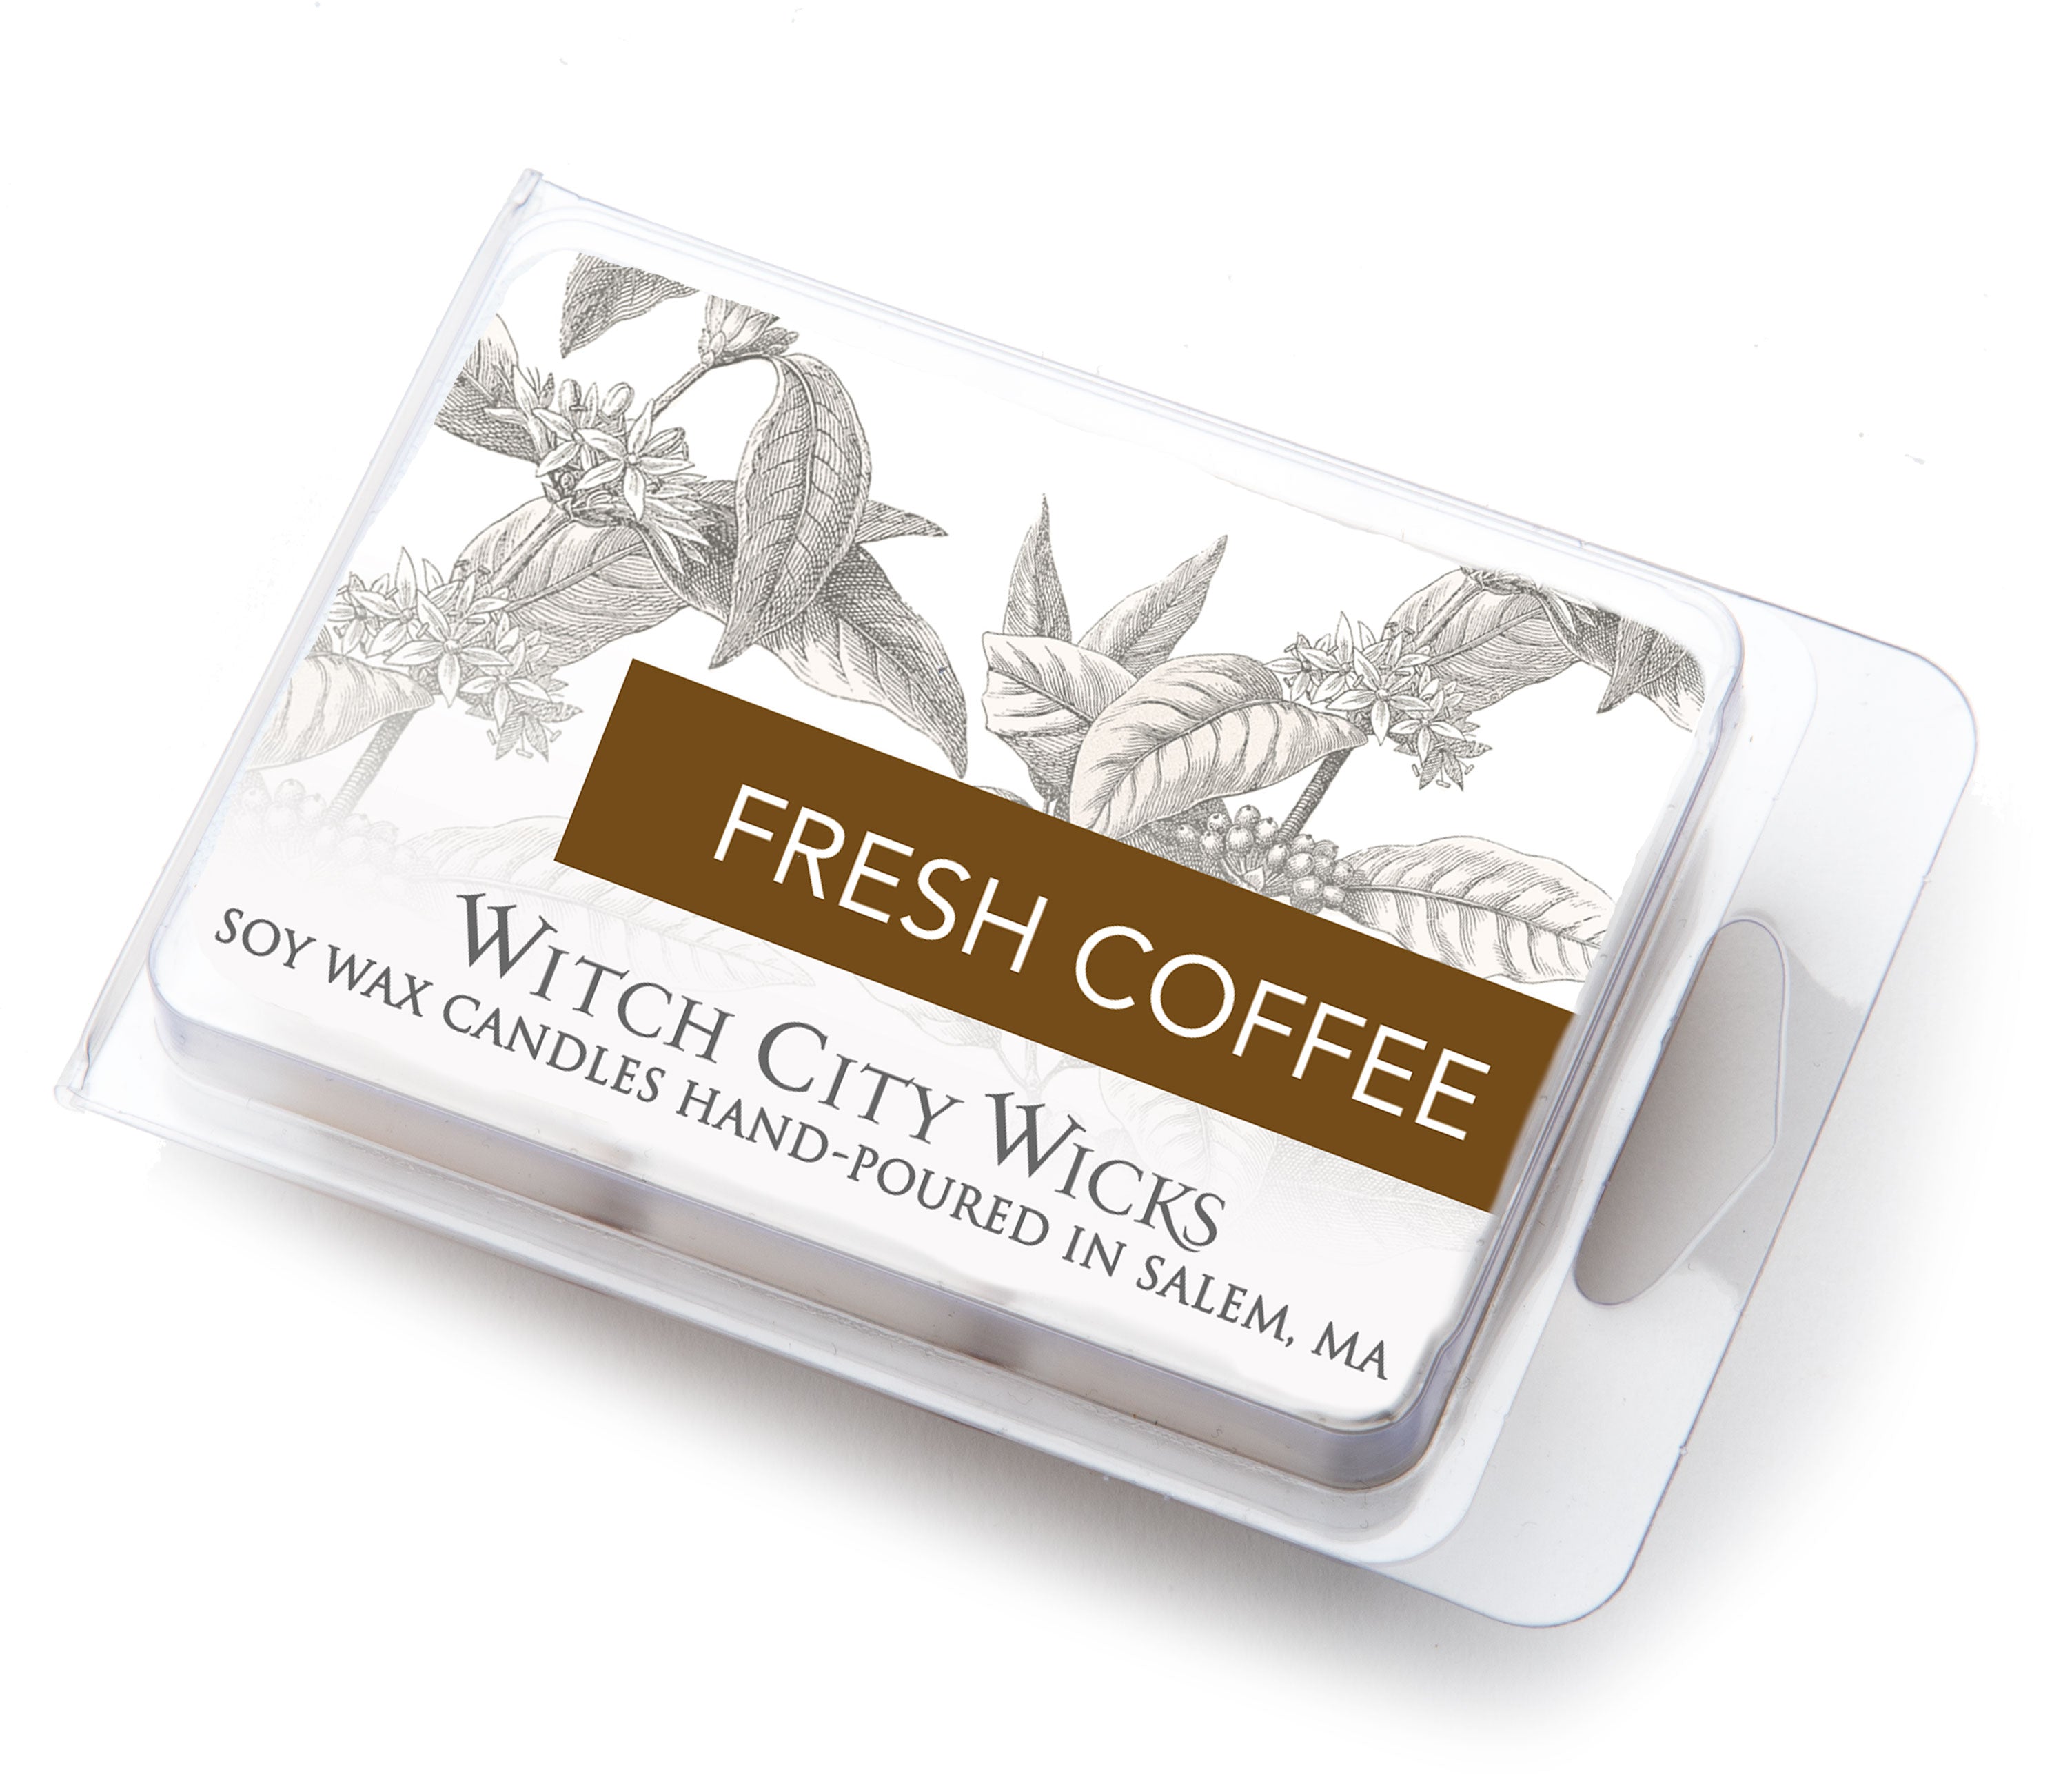 Fresh Coffee wax melts – Witch City Wicks